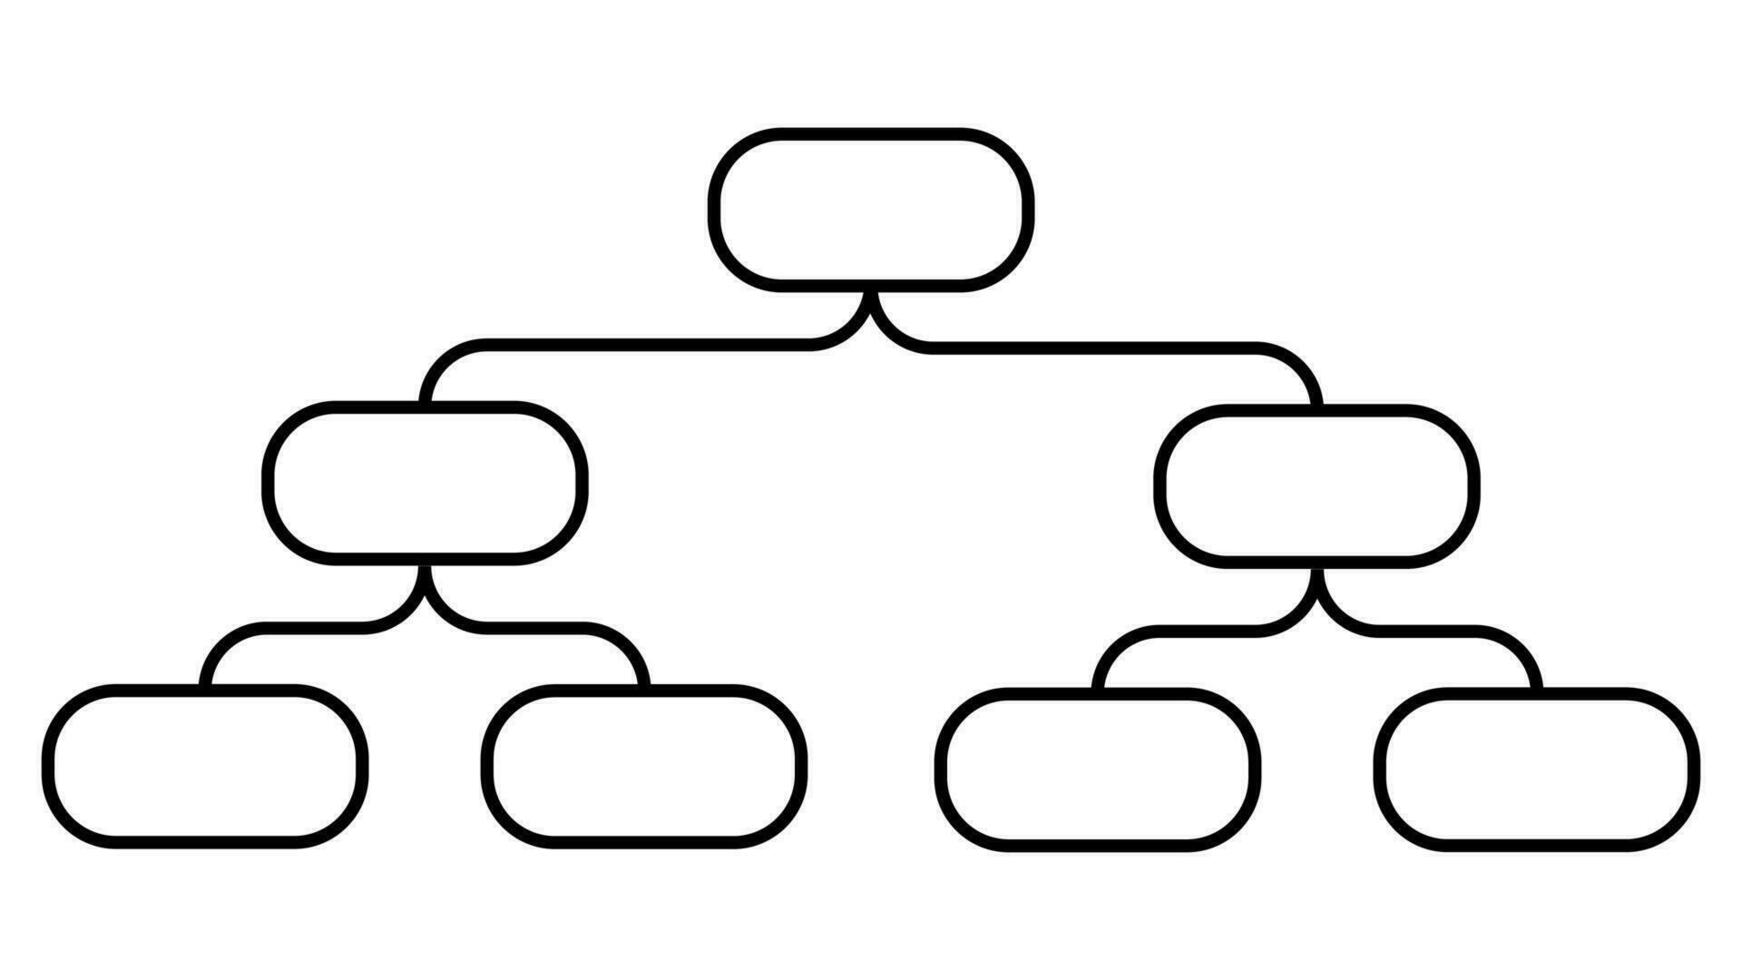 Stammbaum Symbol Familie Baum, Familie Leben Geschichte Diagramm, Stammbaum Diagramm vektor